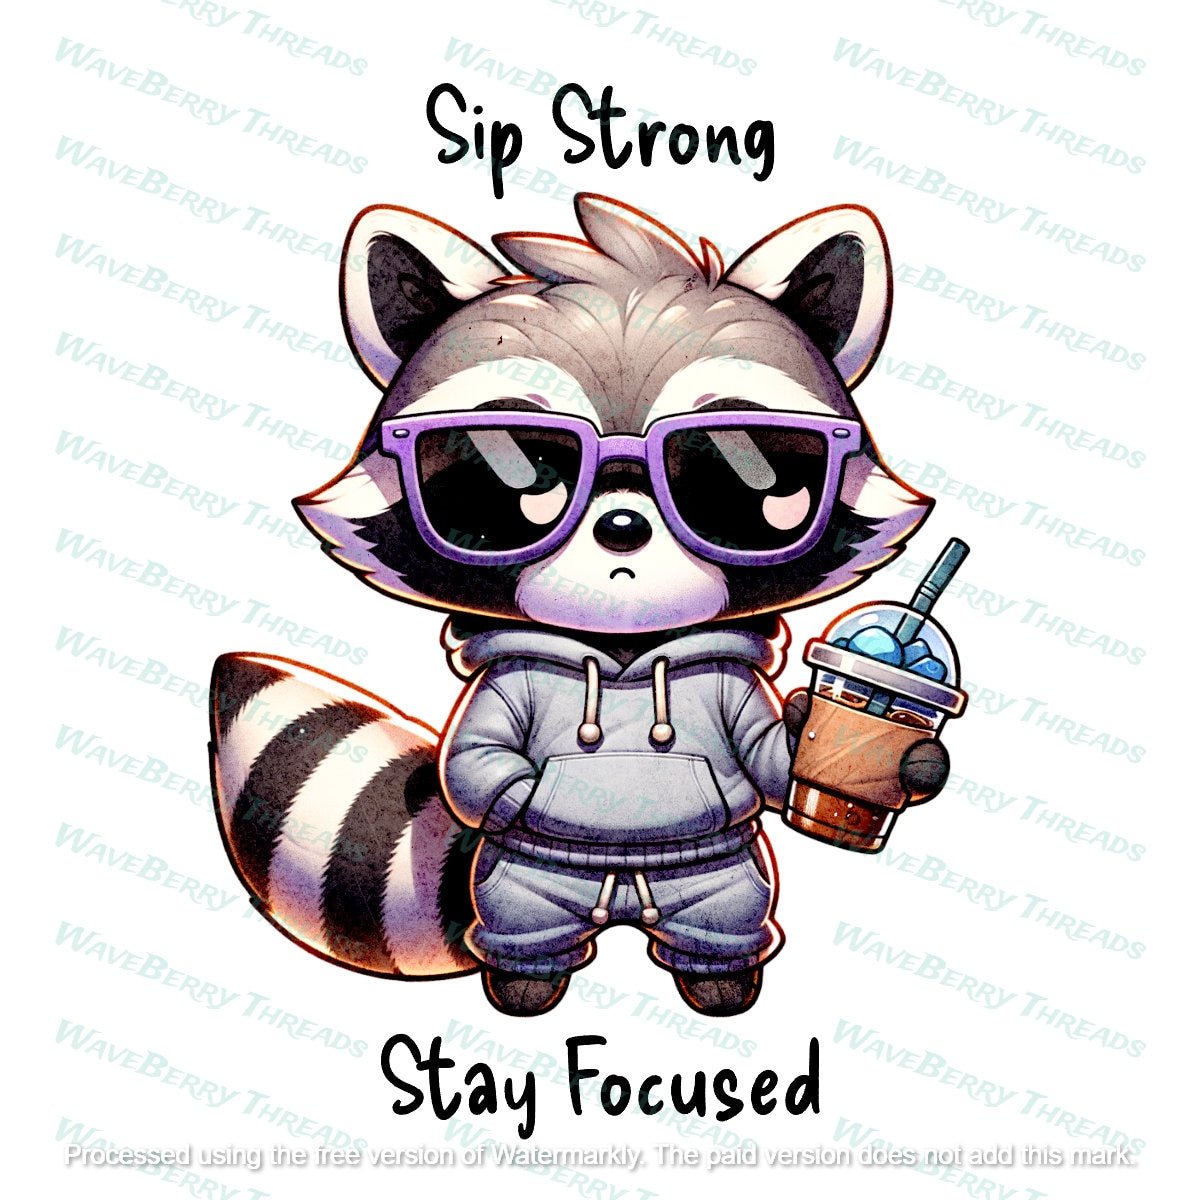 Sip Strong Stay Focused Raccoon Iced Coffee Hoodie Sweatshirt